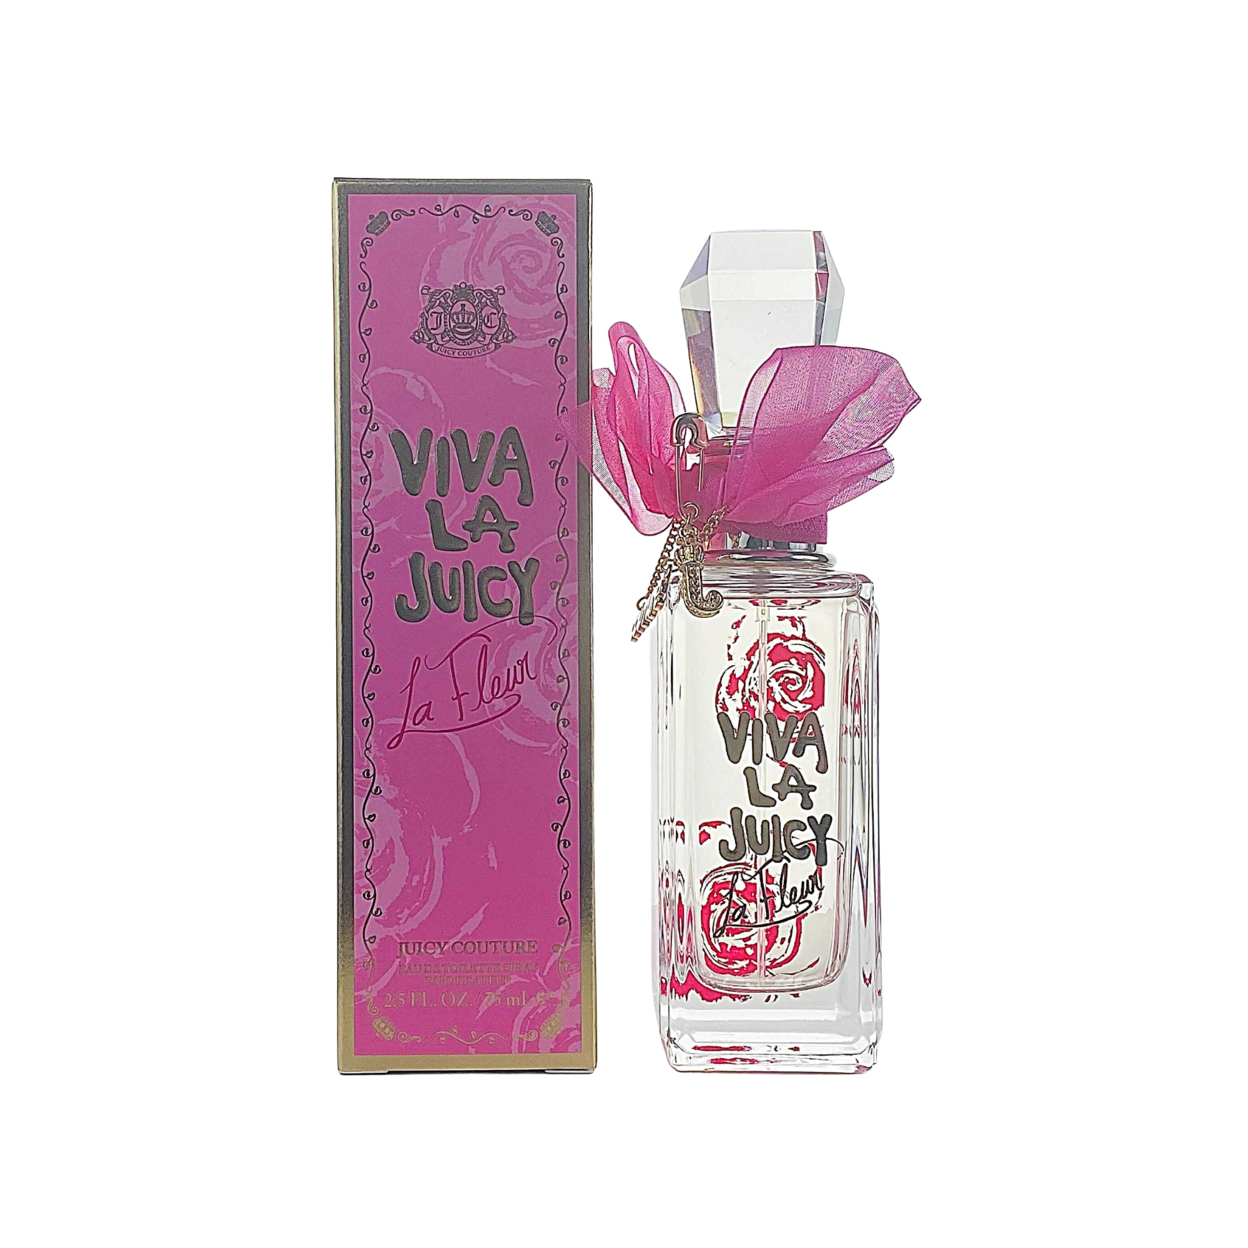 Juicy Couture Viva La Juicy La Fleur Eau De Toilette For Women 2.5 Oz / 75 Ml - Spray